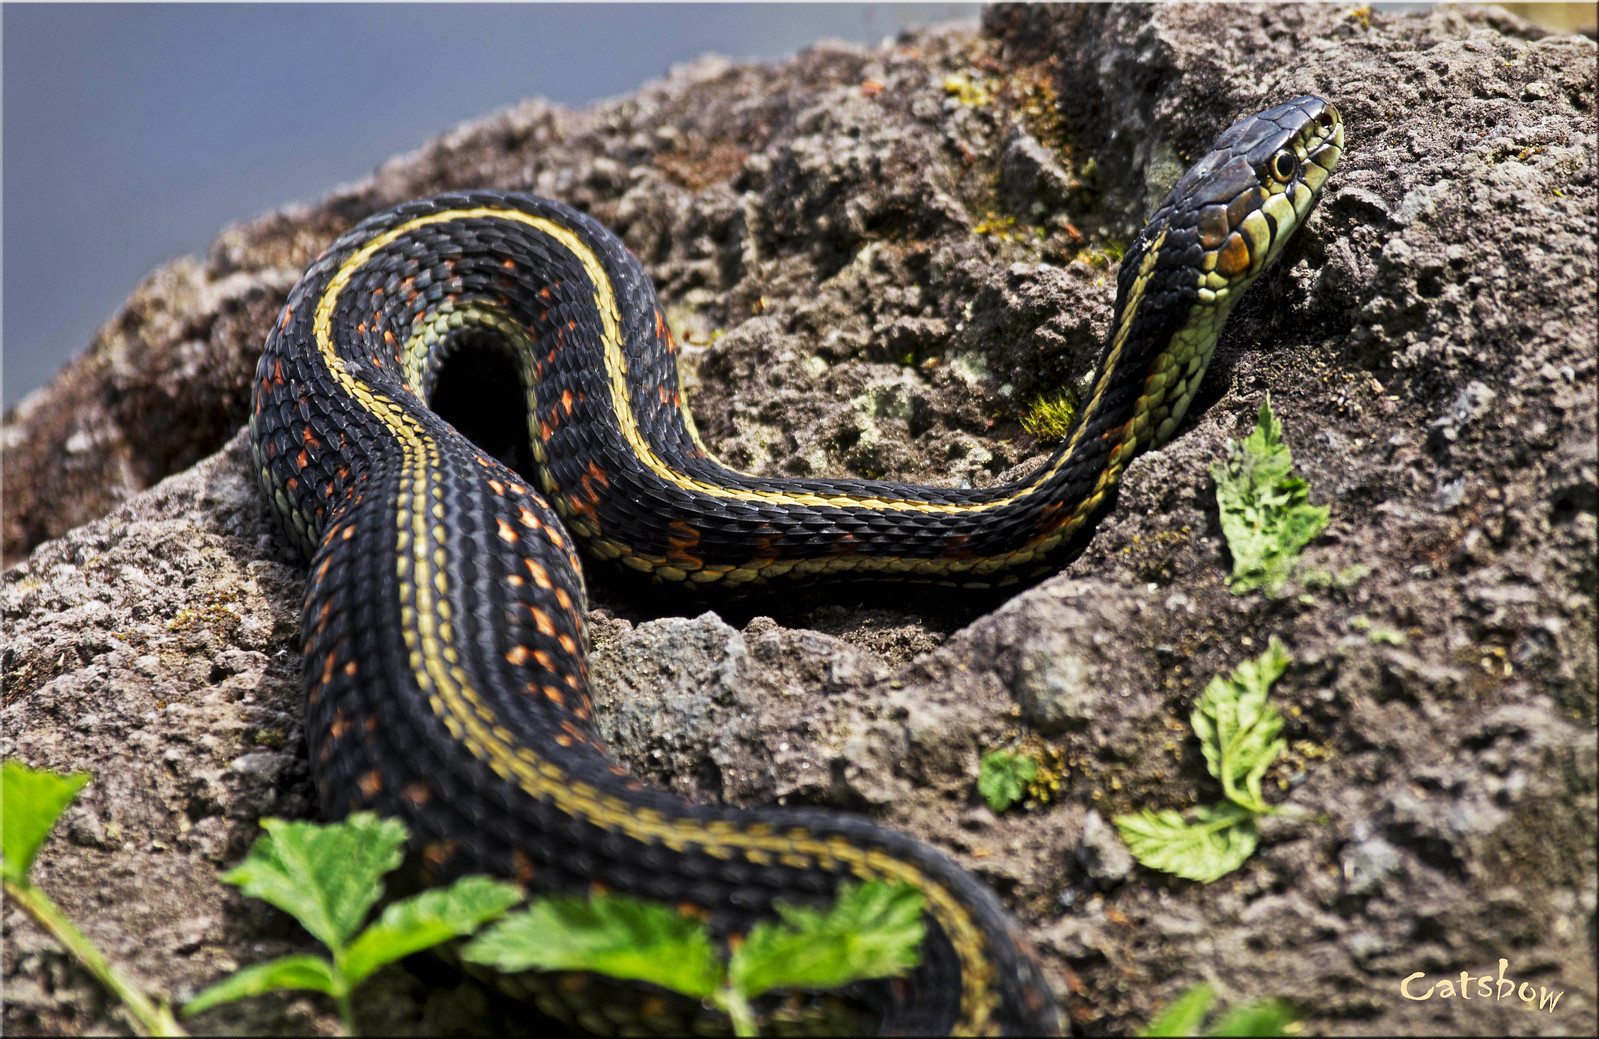 Pregnant Garter Snake